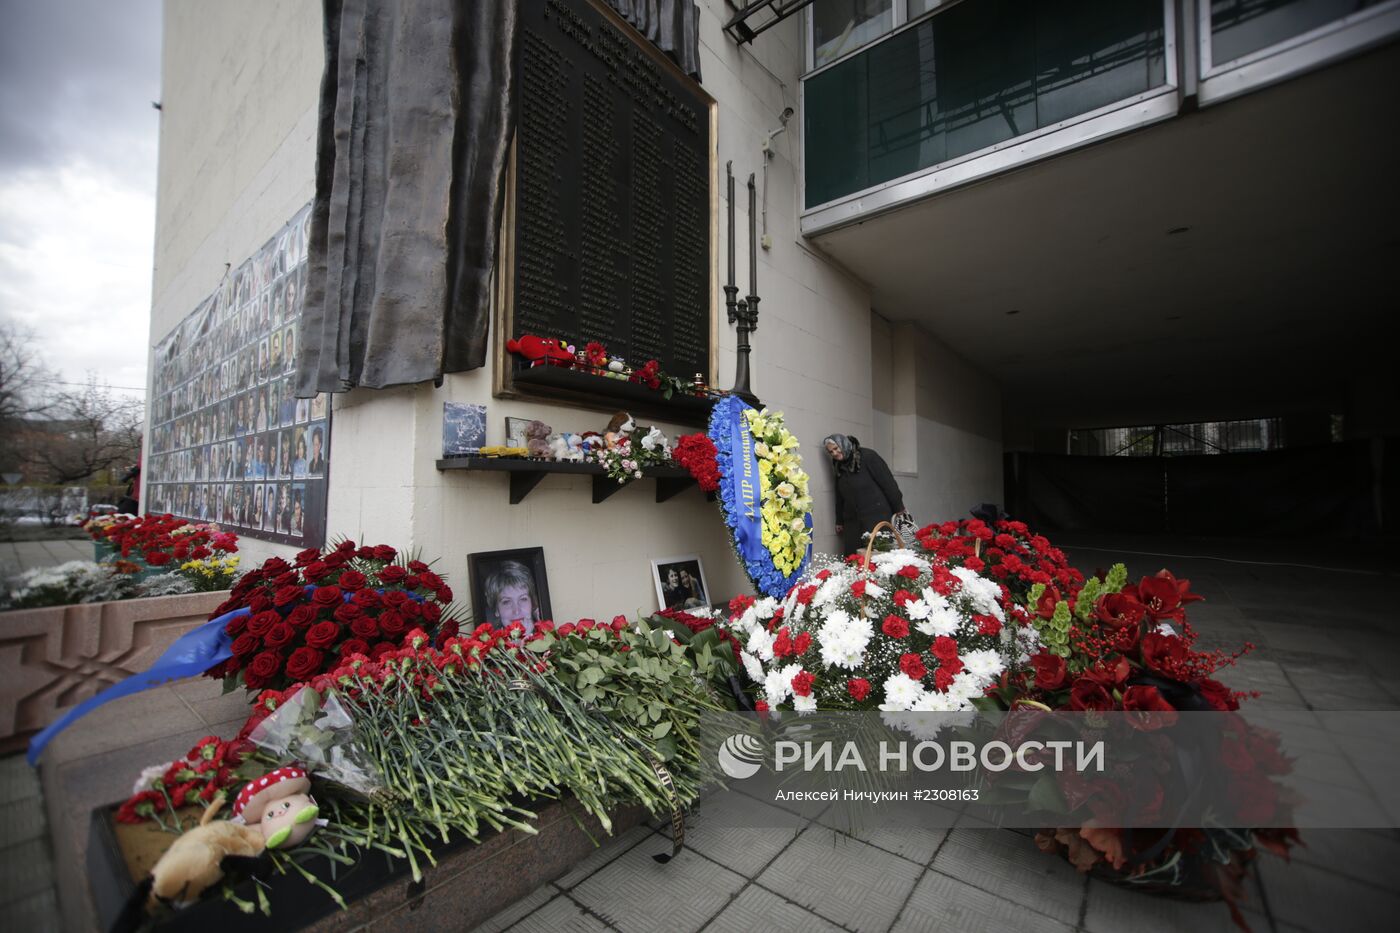 Акция памяти, посвященная трагическим событиям в театральном центре на Дубровке